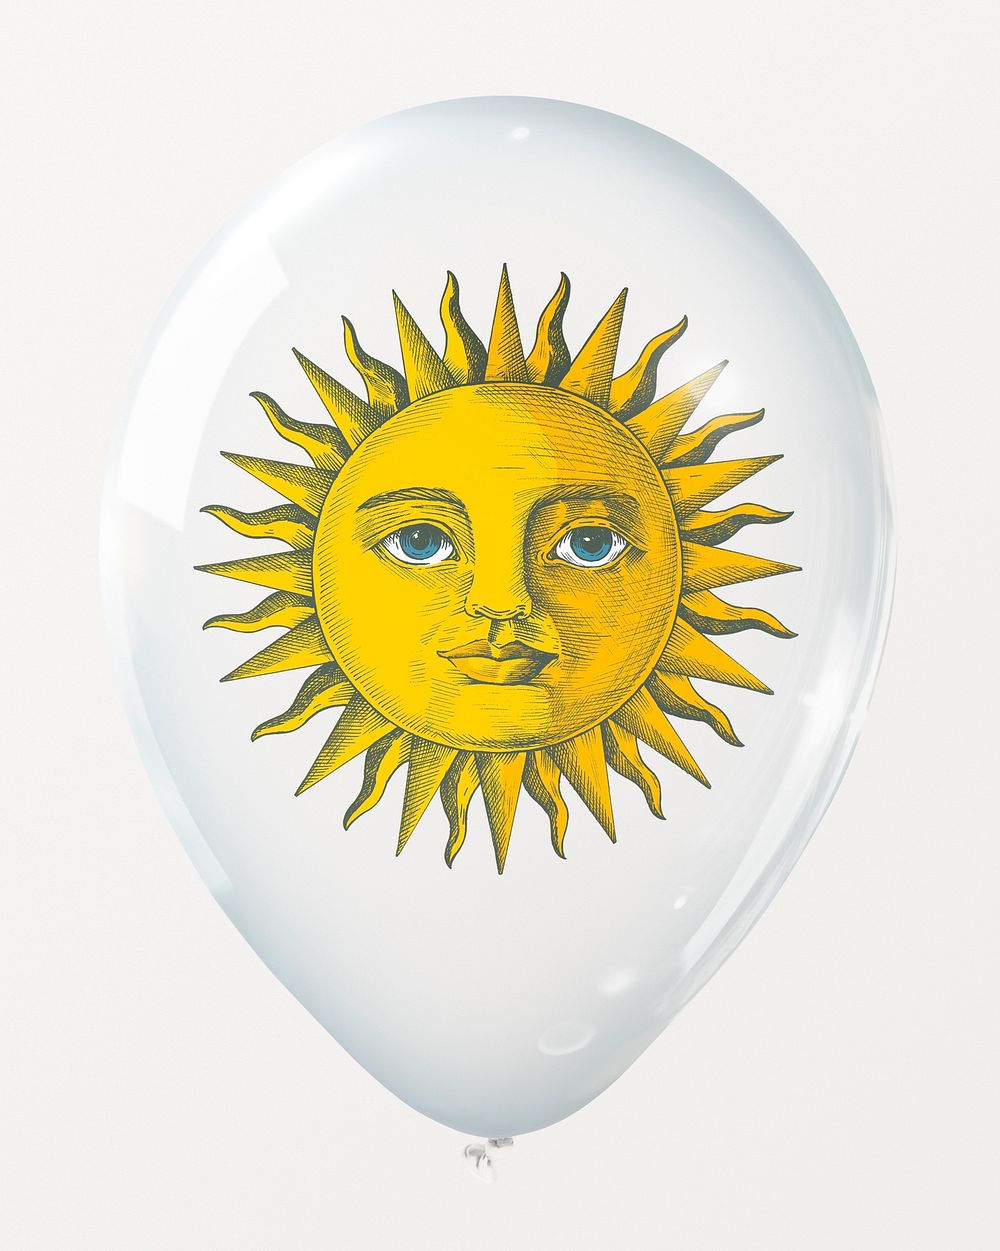 Sun character in clear balloon